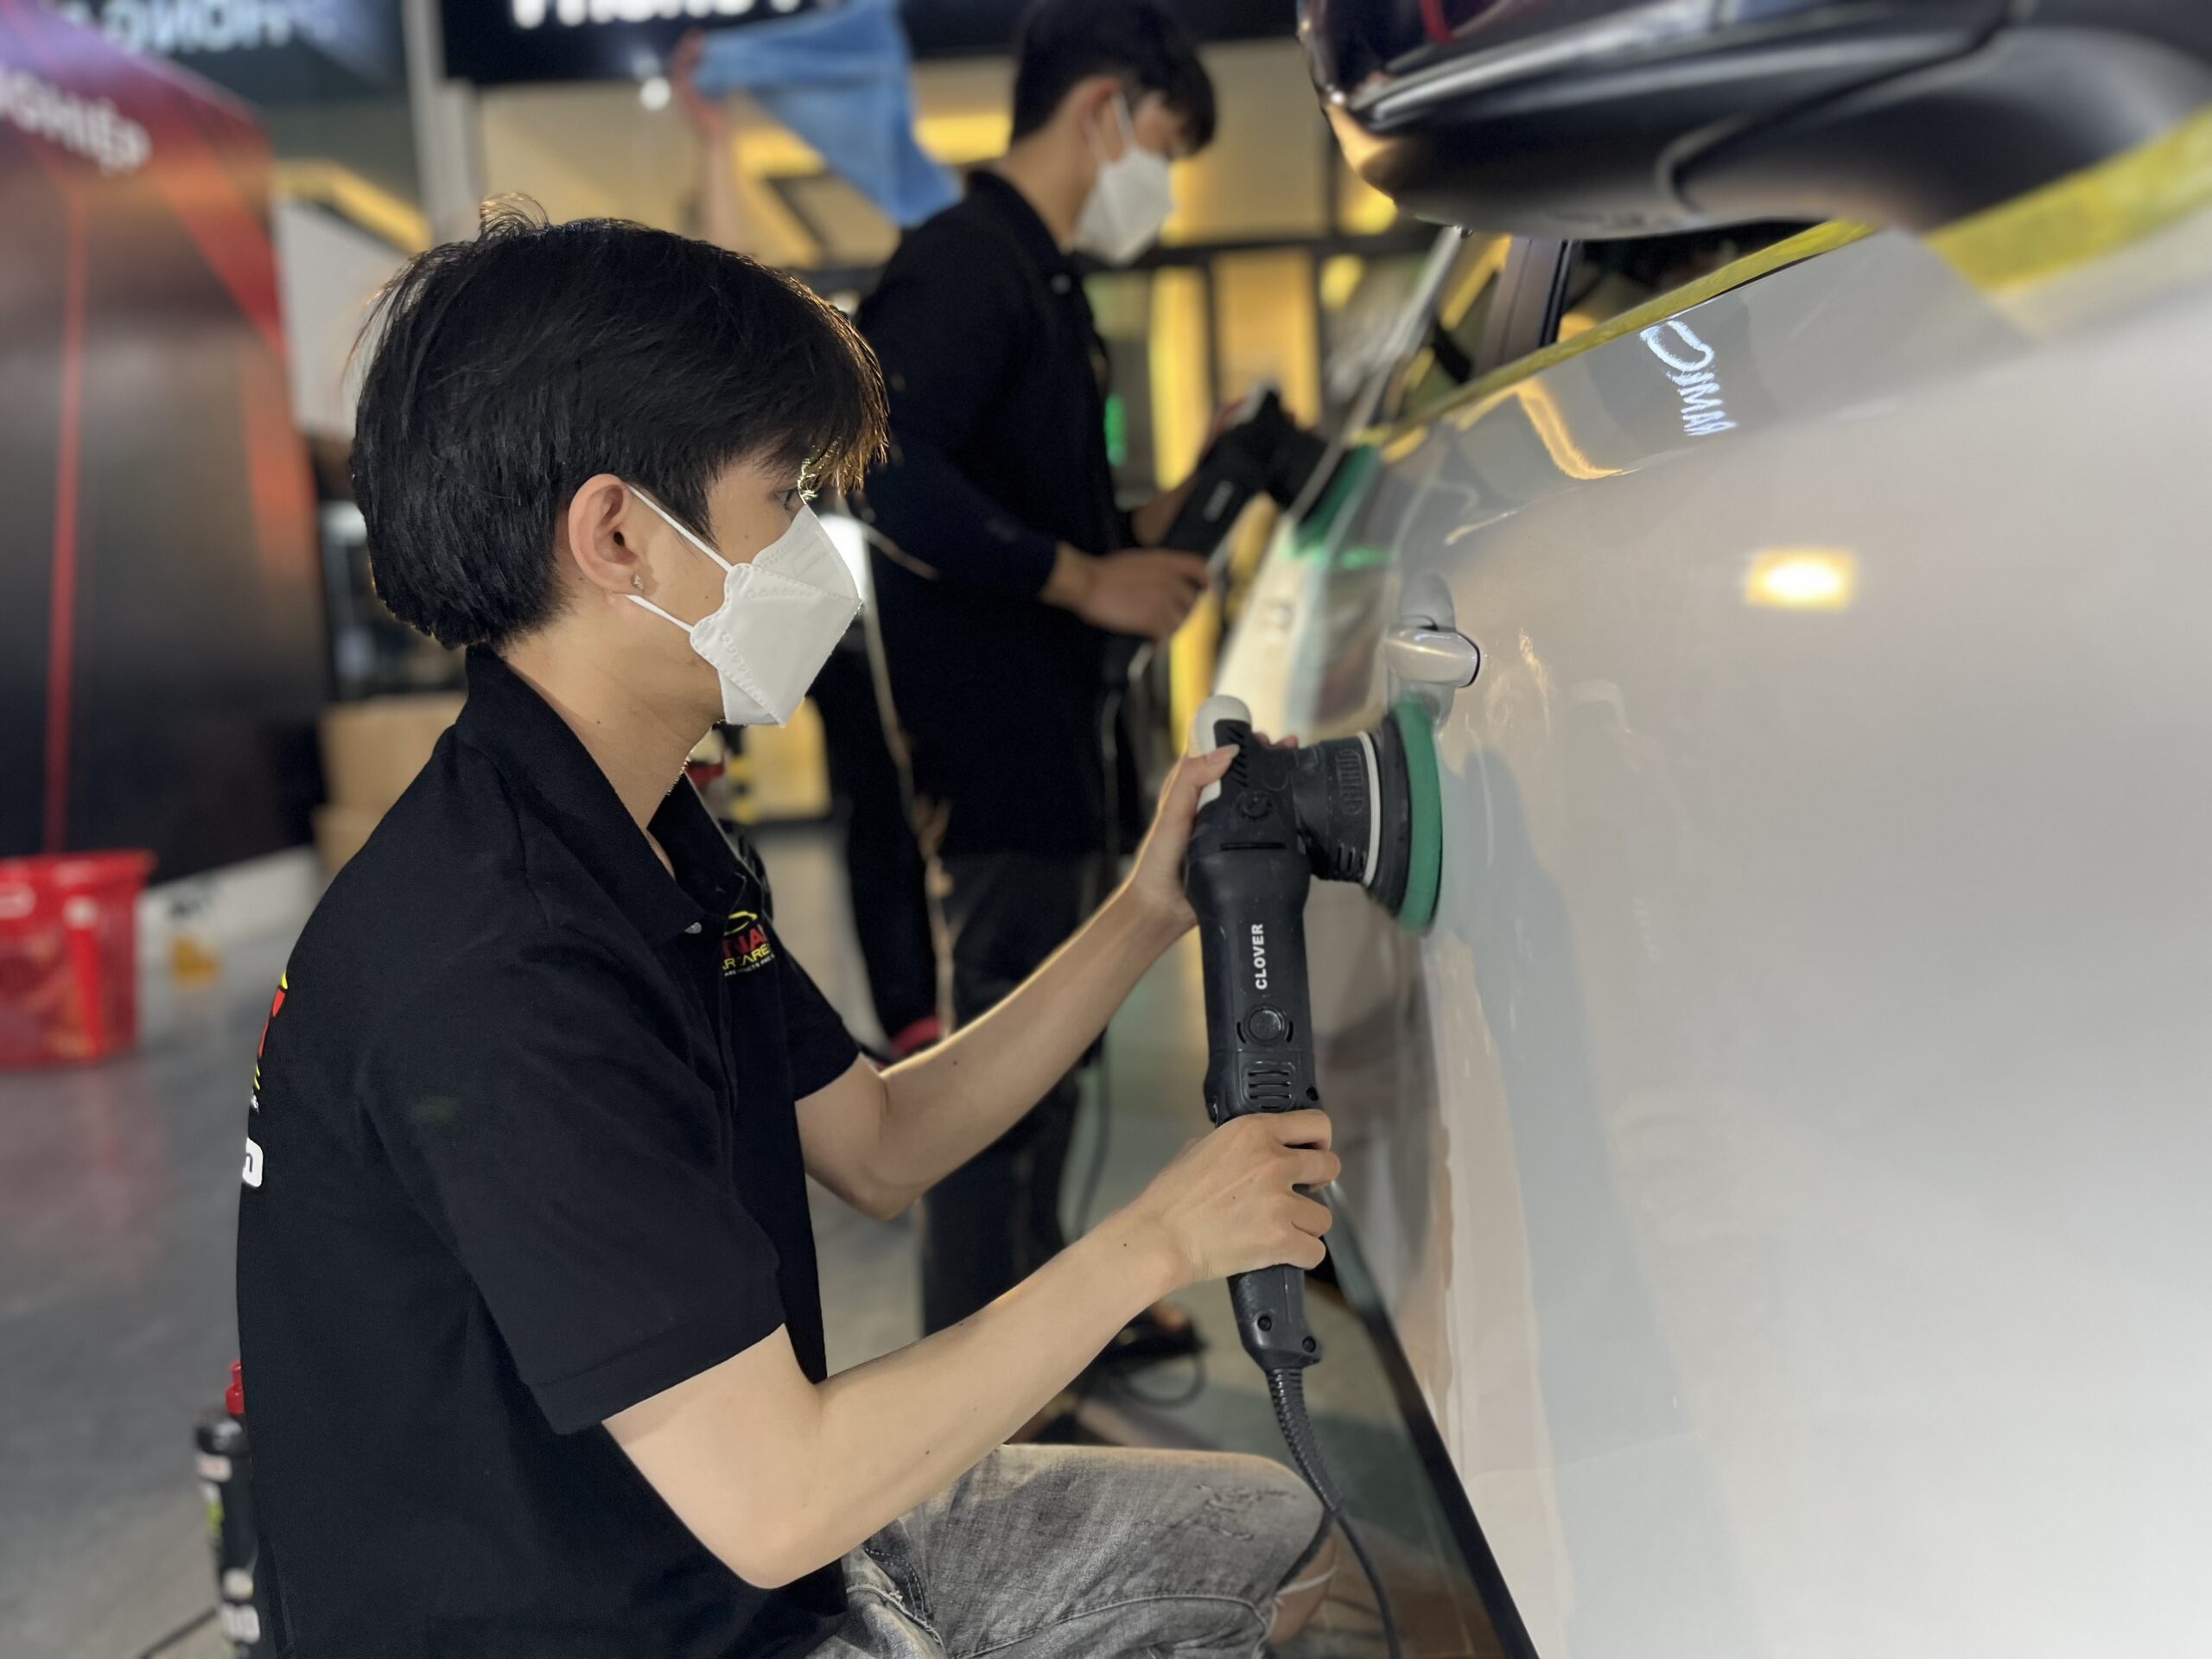 Đánh bóng có làm hỏng lớp sơn xe ô tô không? | Vietnam Car Care